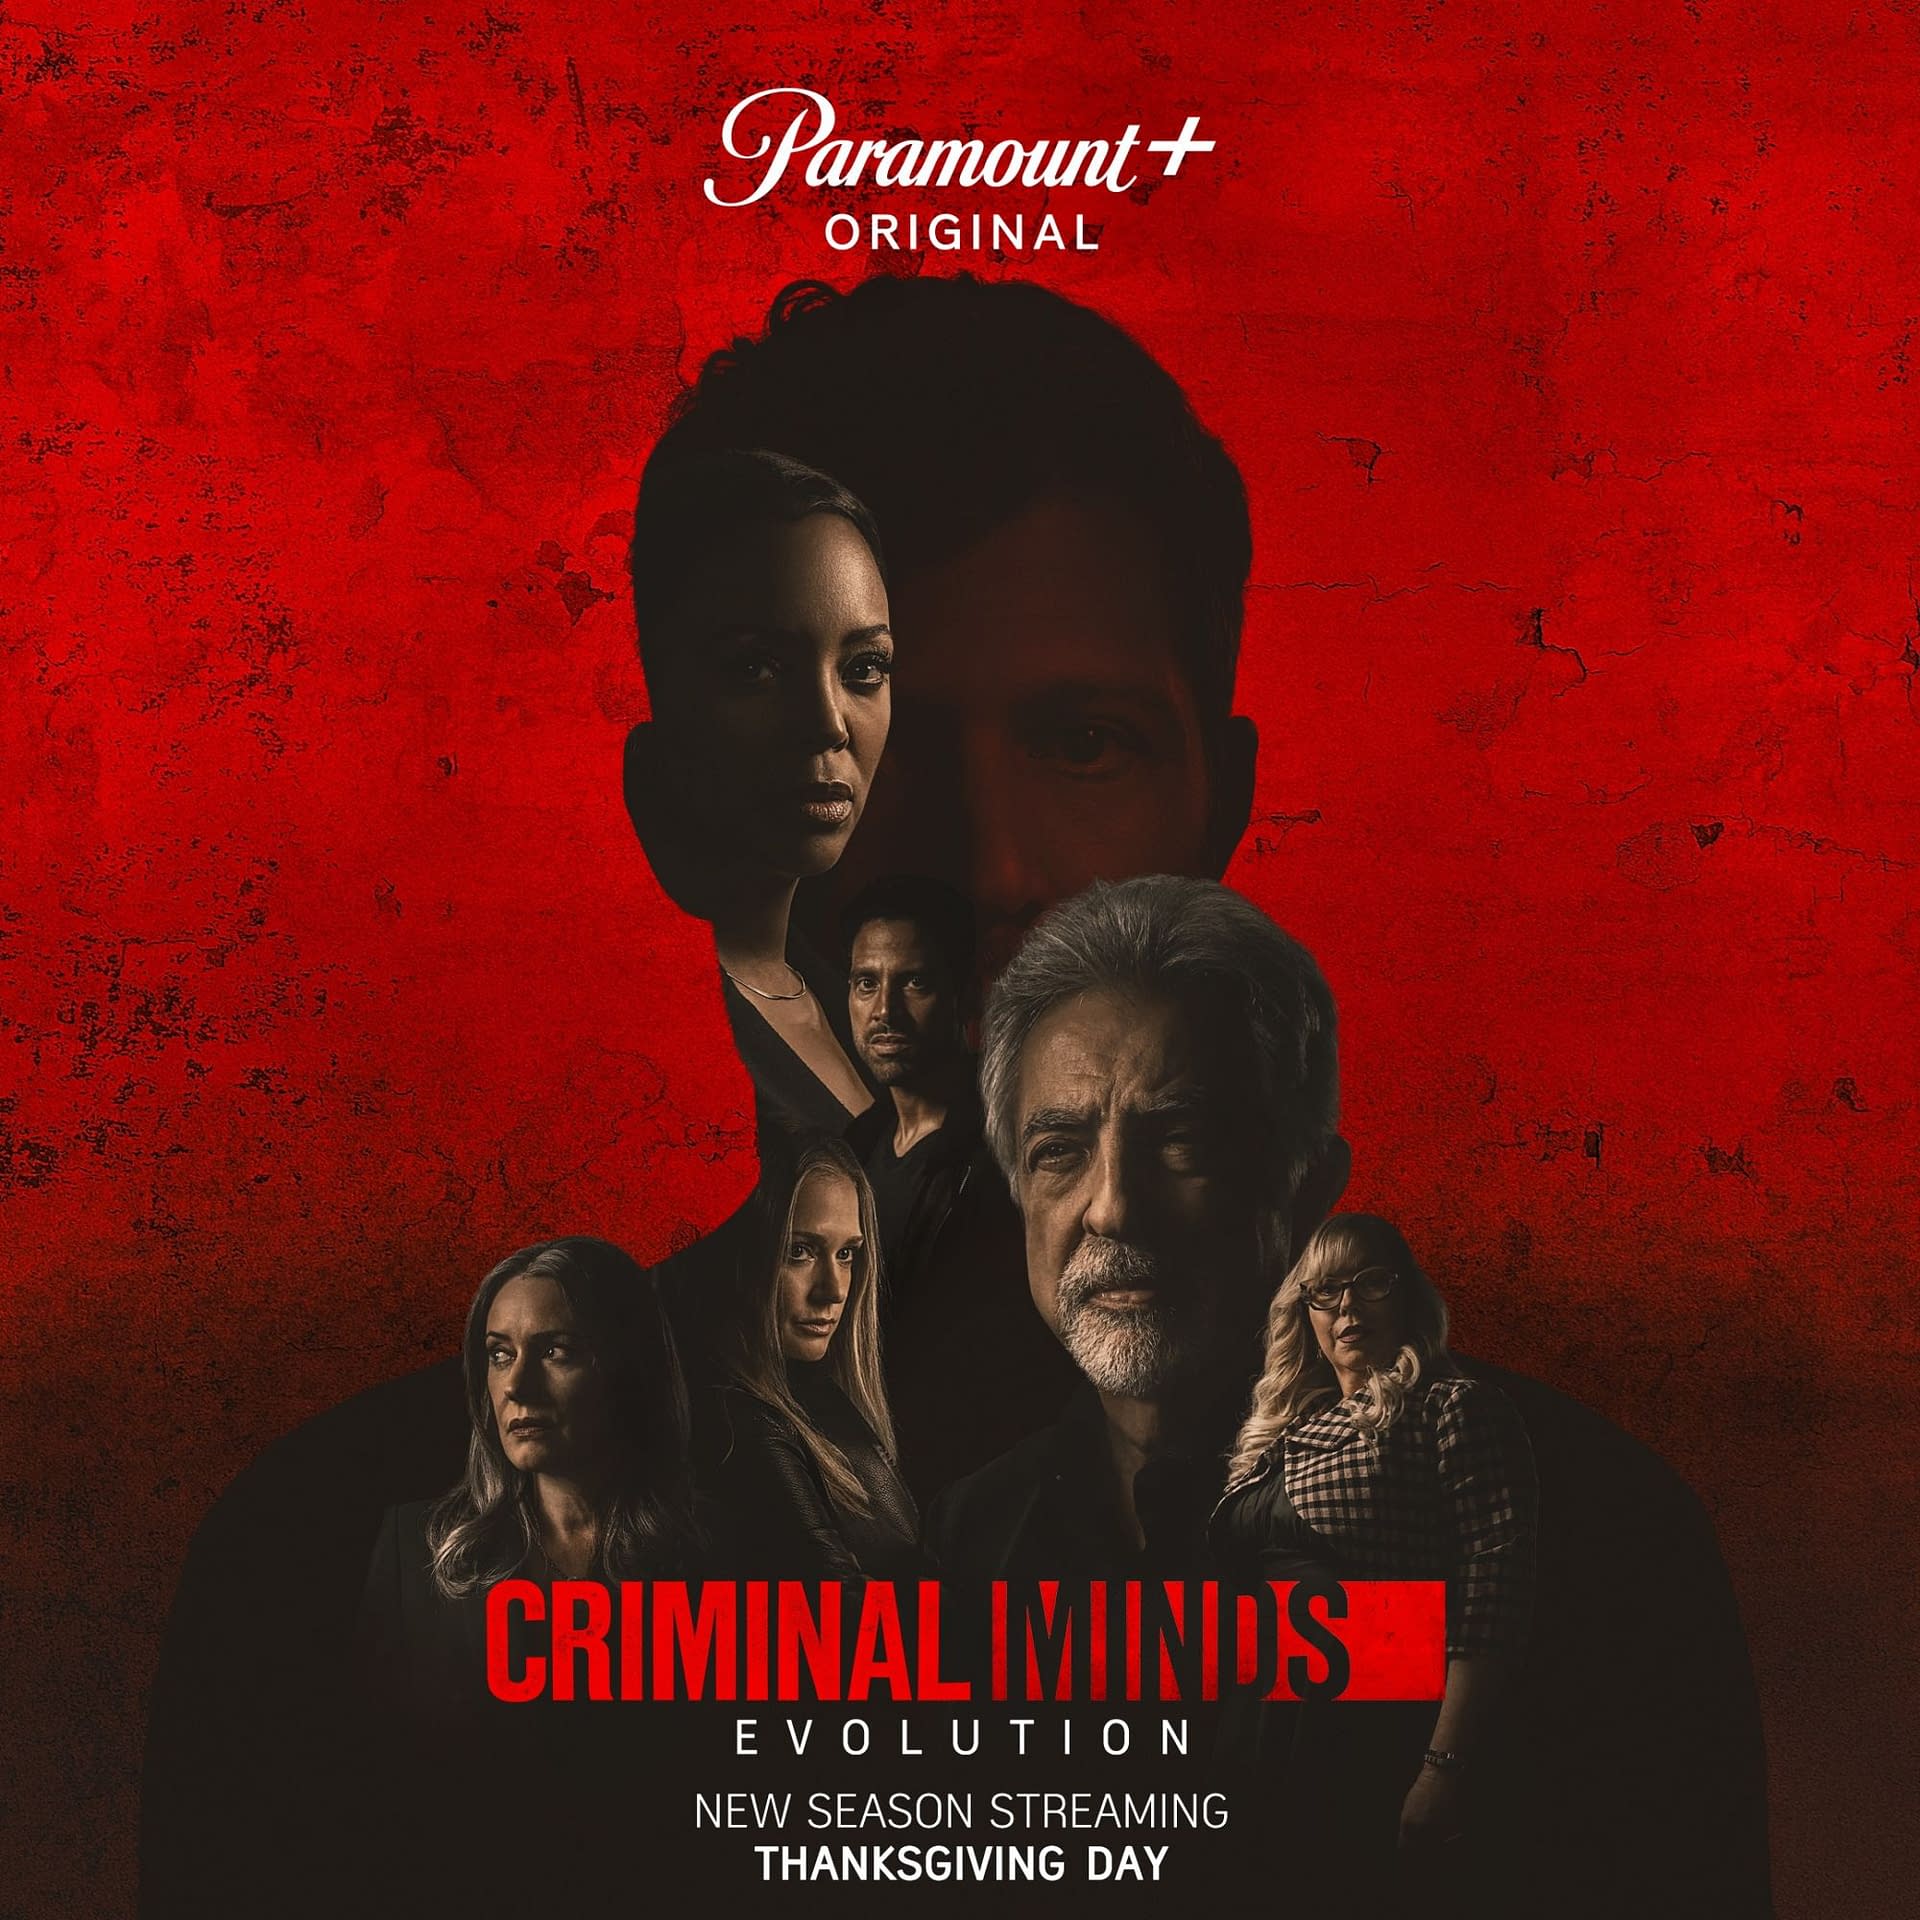 Criminal Minds Evolution Season Key Art Finds Our Team on Red Alert